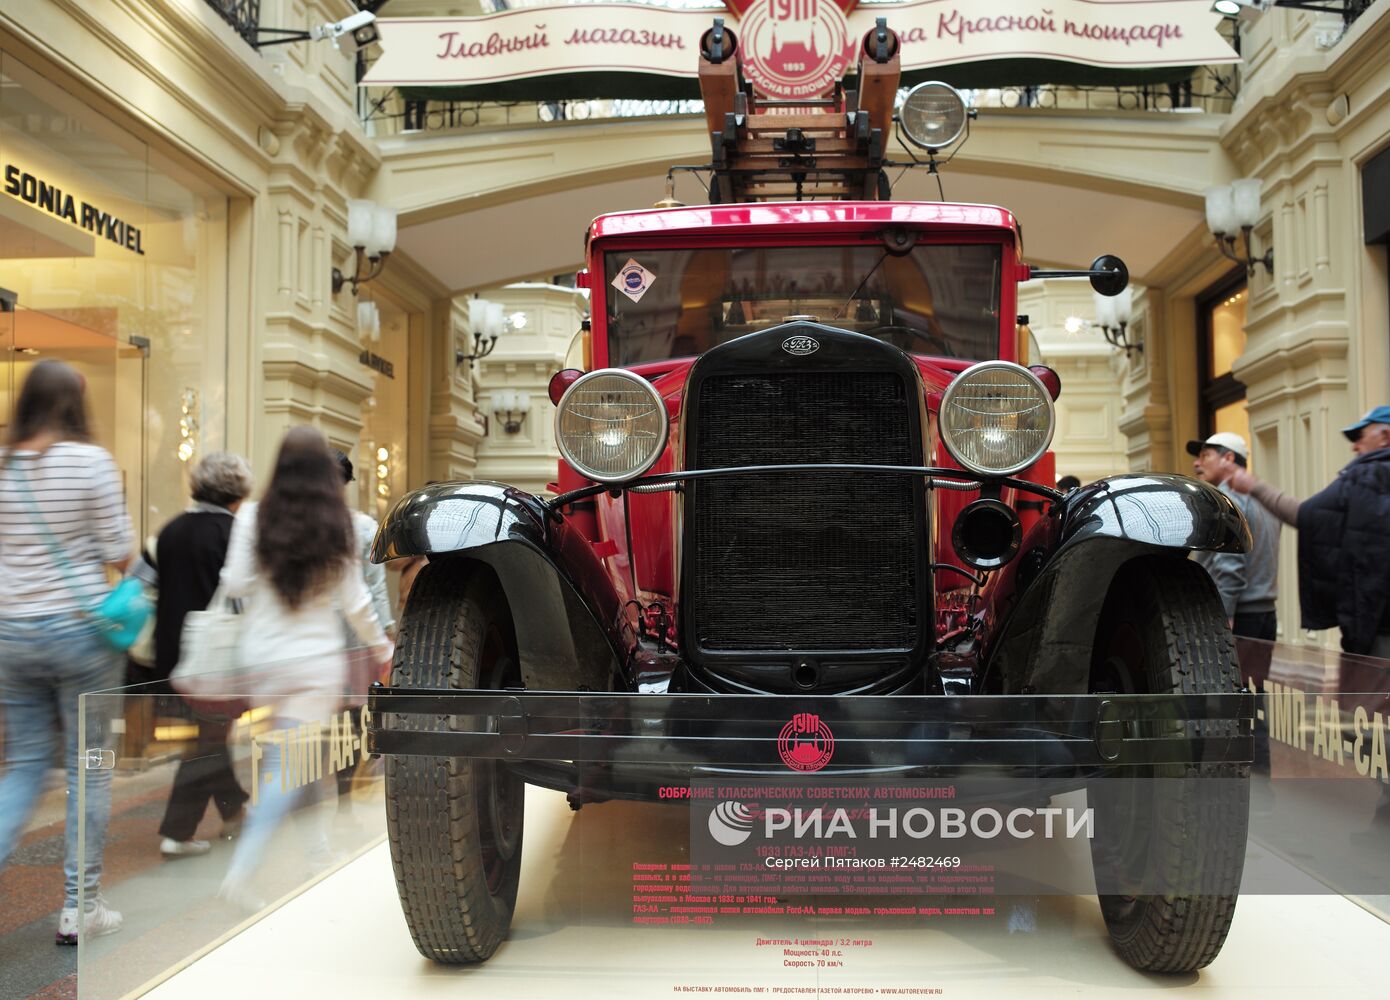 Выставка классических советских автомобилей в ГУМе